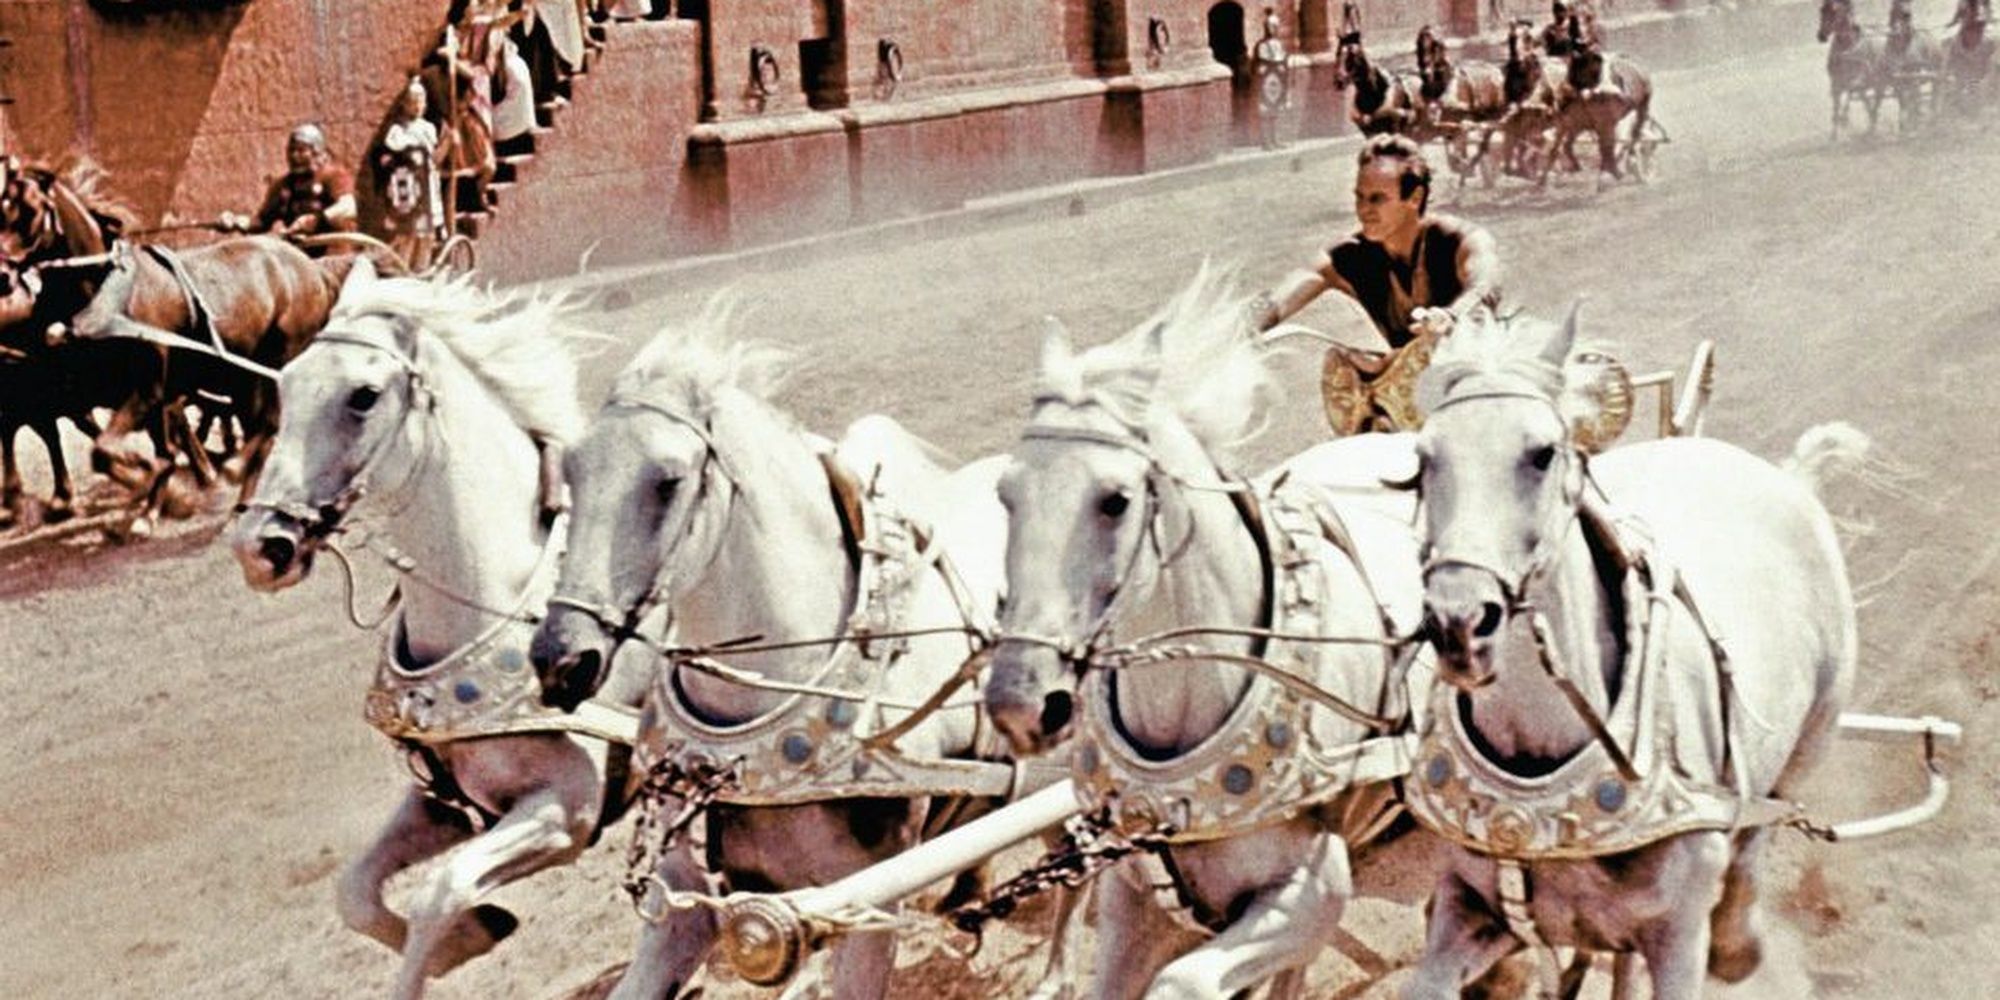 The chariot race in Ben-Hur